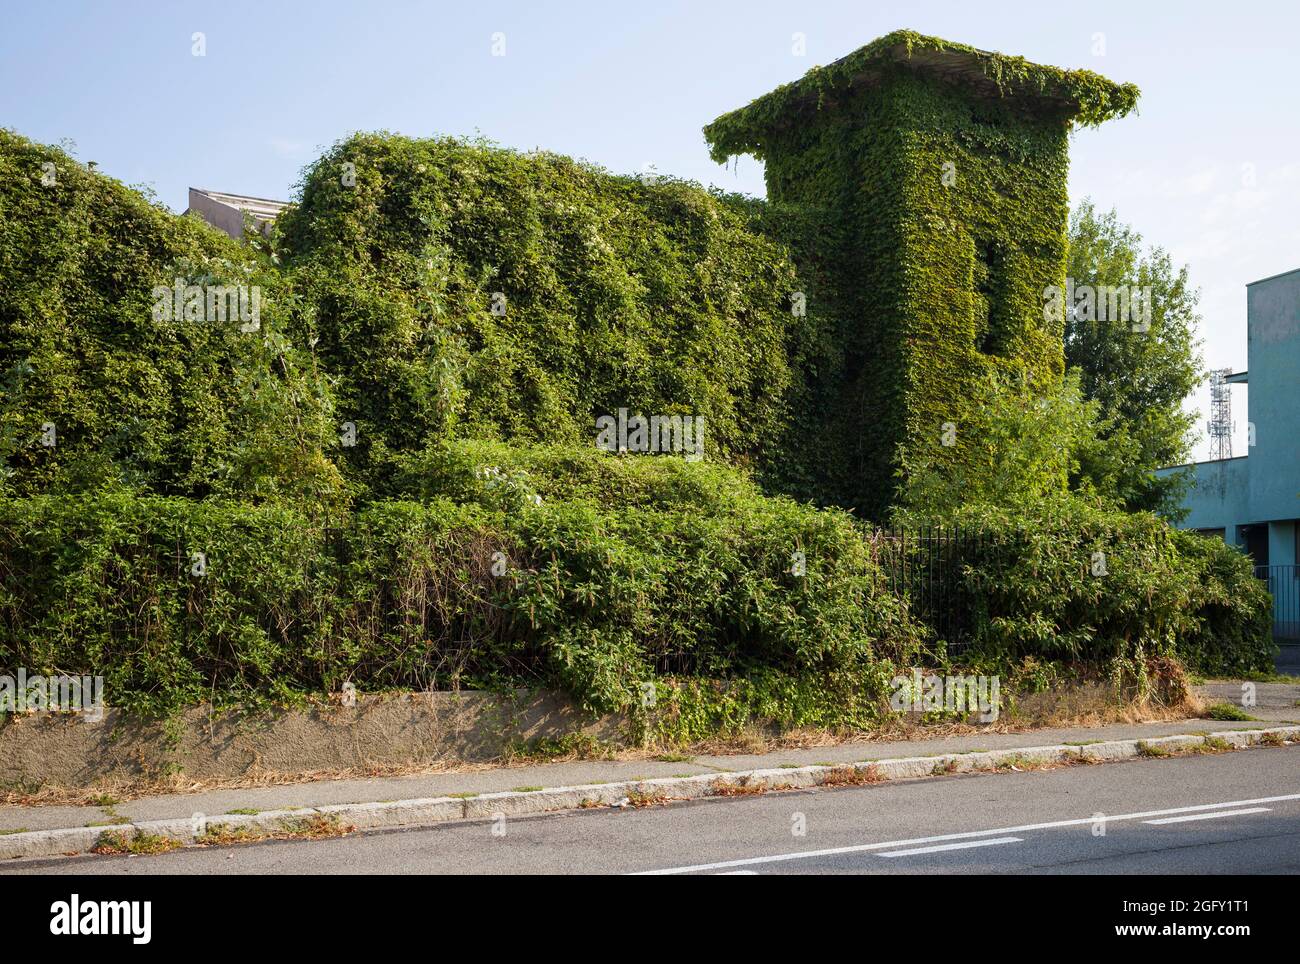 Une usine abandonnée, surcultivée à Treviglio en Lombardie / Lombardie, couverte d'ivy / edera / Hedera Helix et d'autres plantes. Banque D'Images